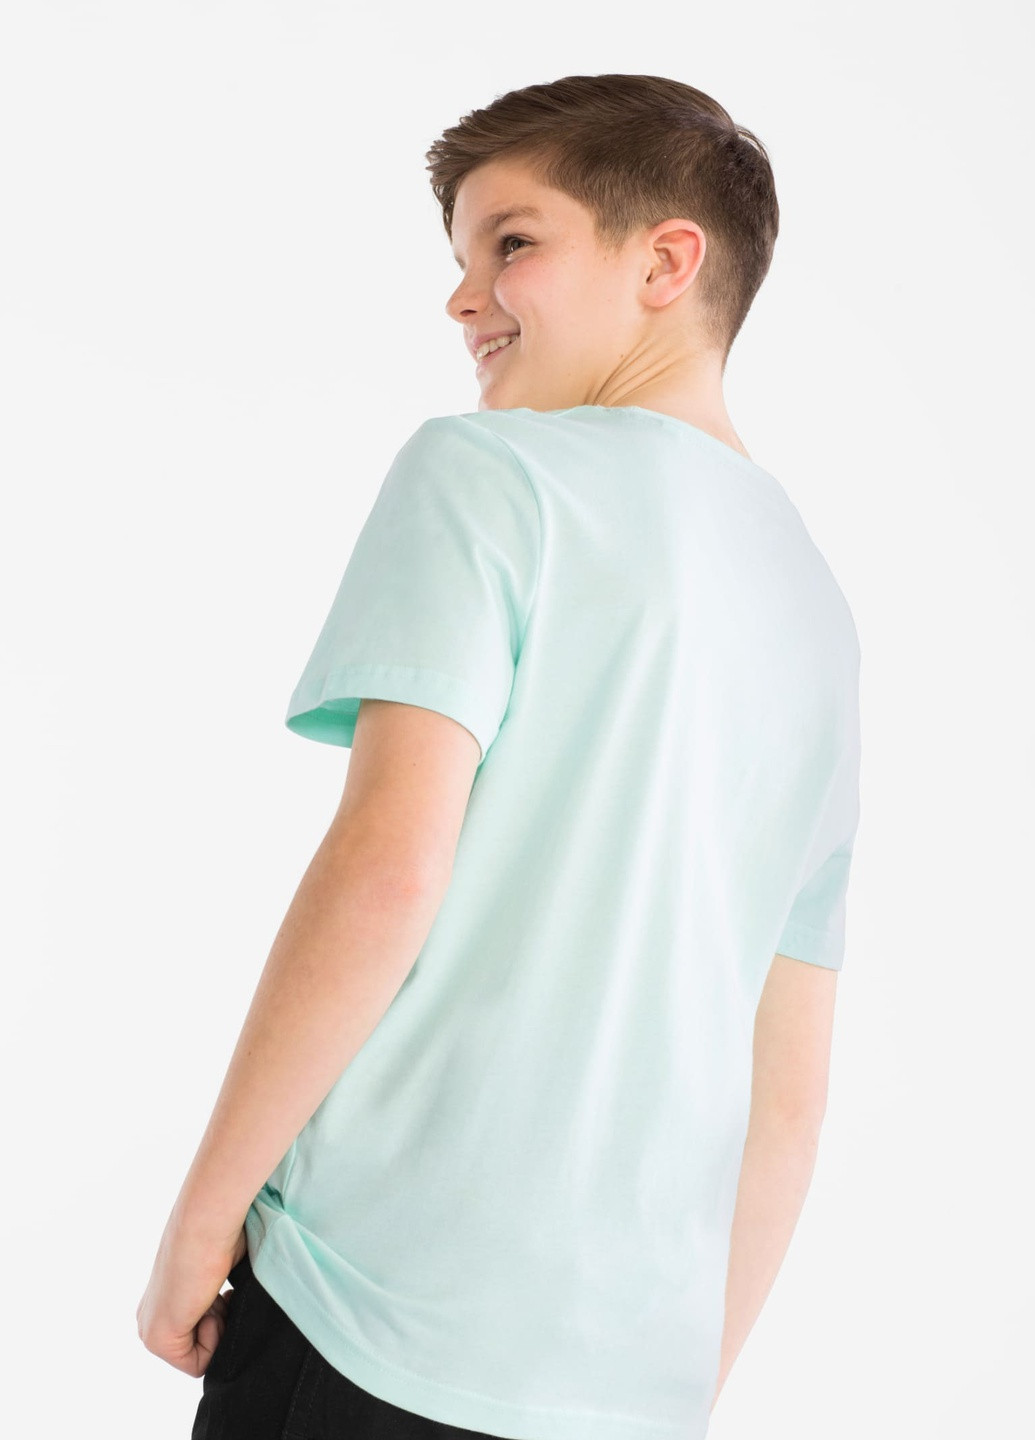 Комбинированная летняя набор футболок для мальчика 134-140 размер 2007437 C&A